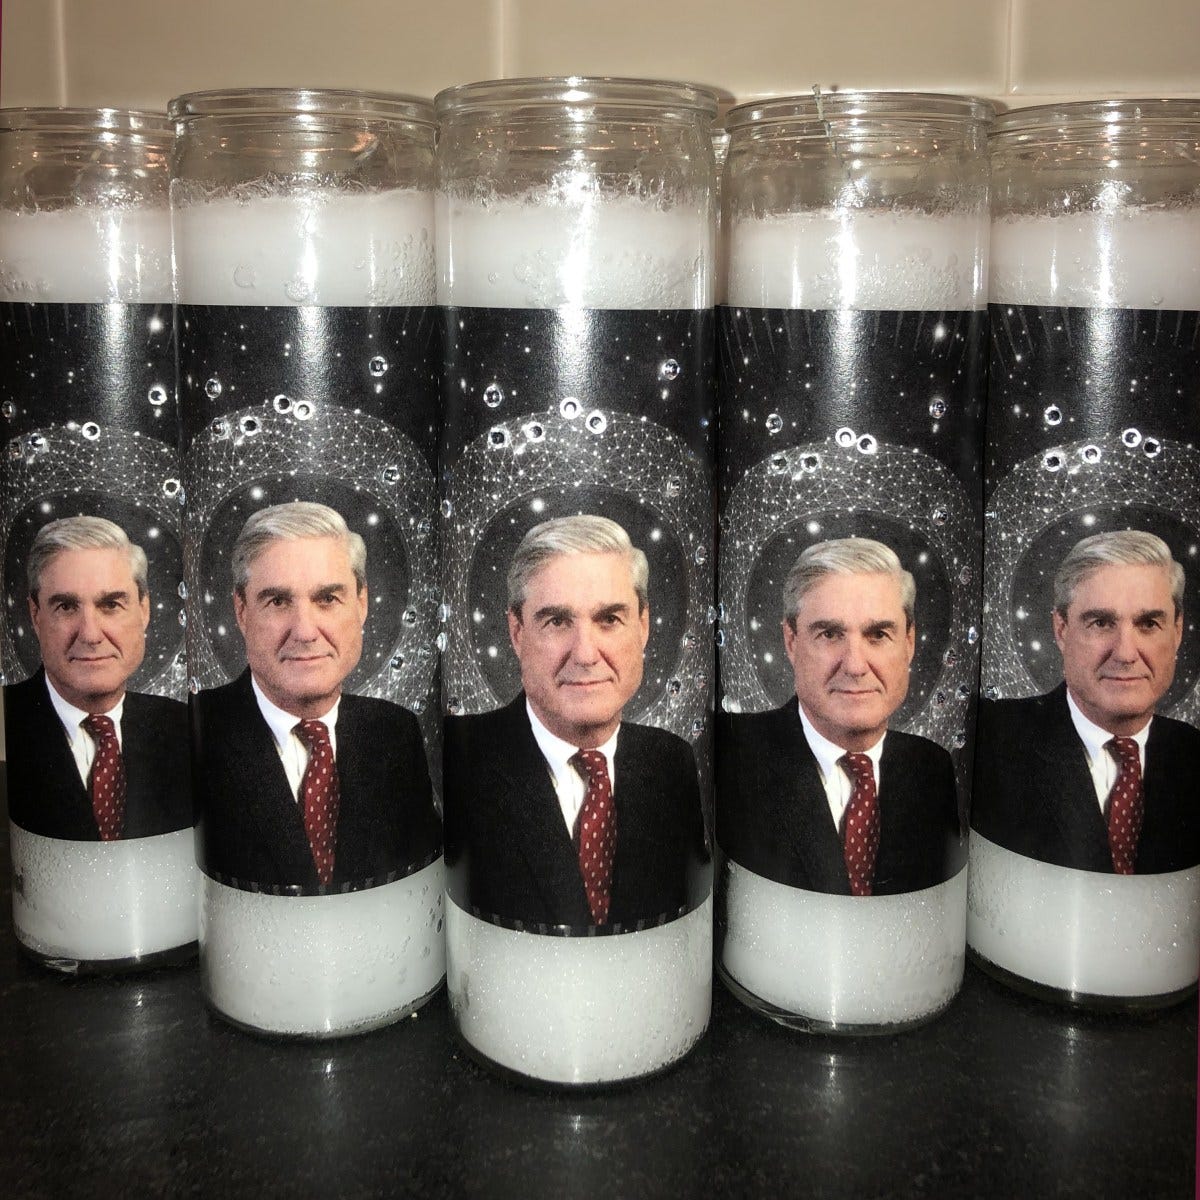 Robert Mueller devotional candles | Boing Boing